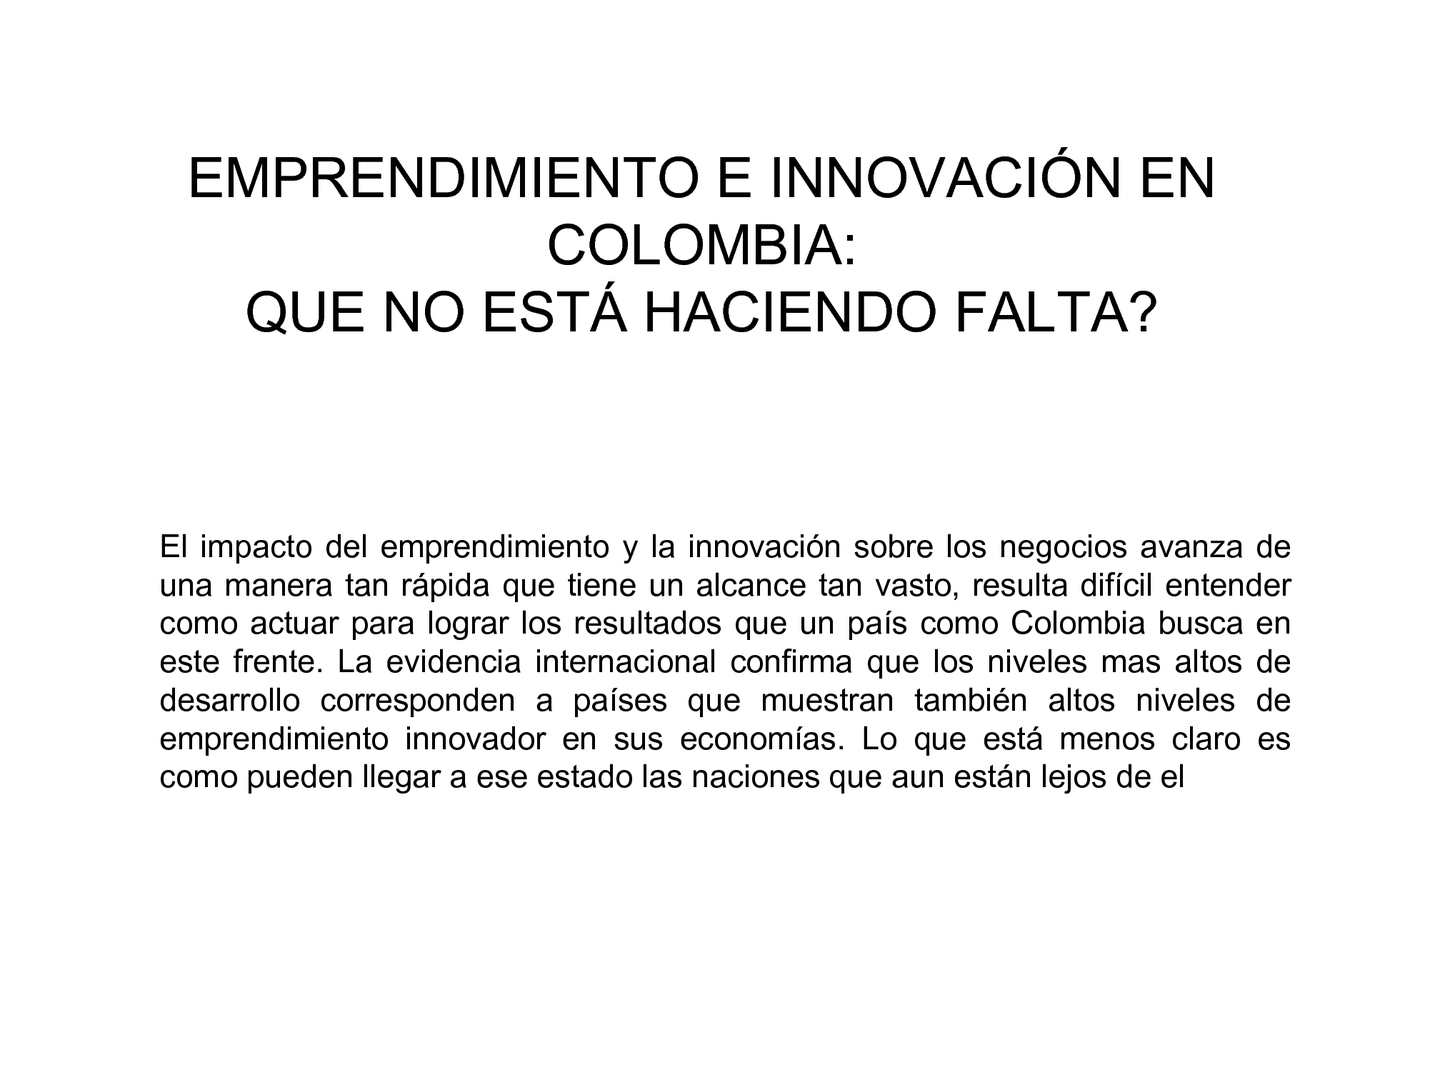 innovacion y emprendimiento en colombia